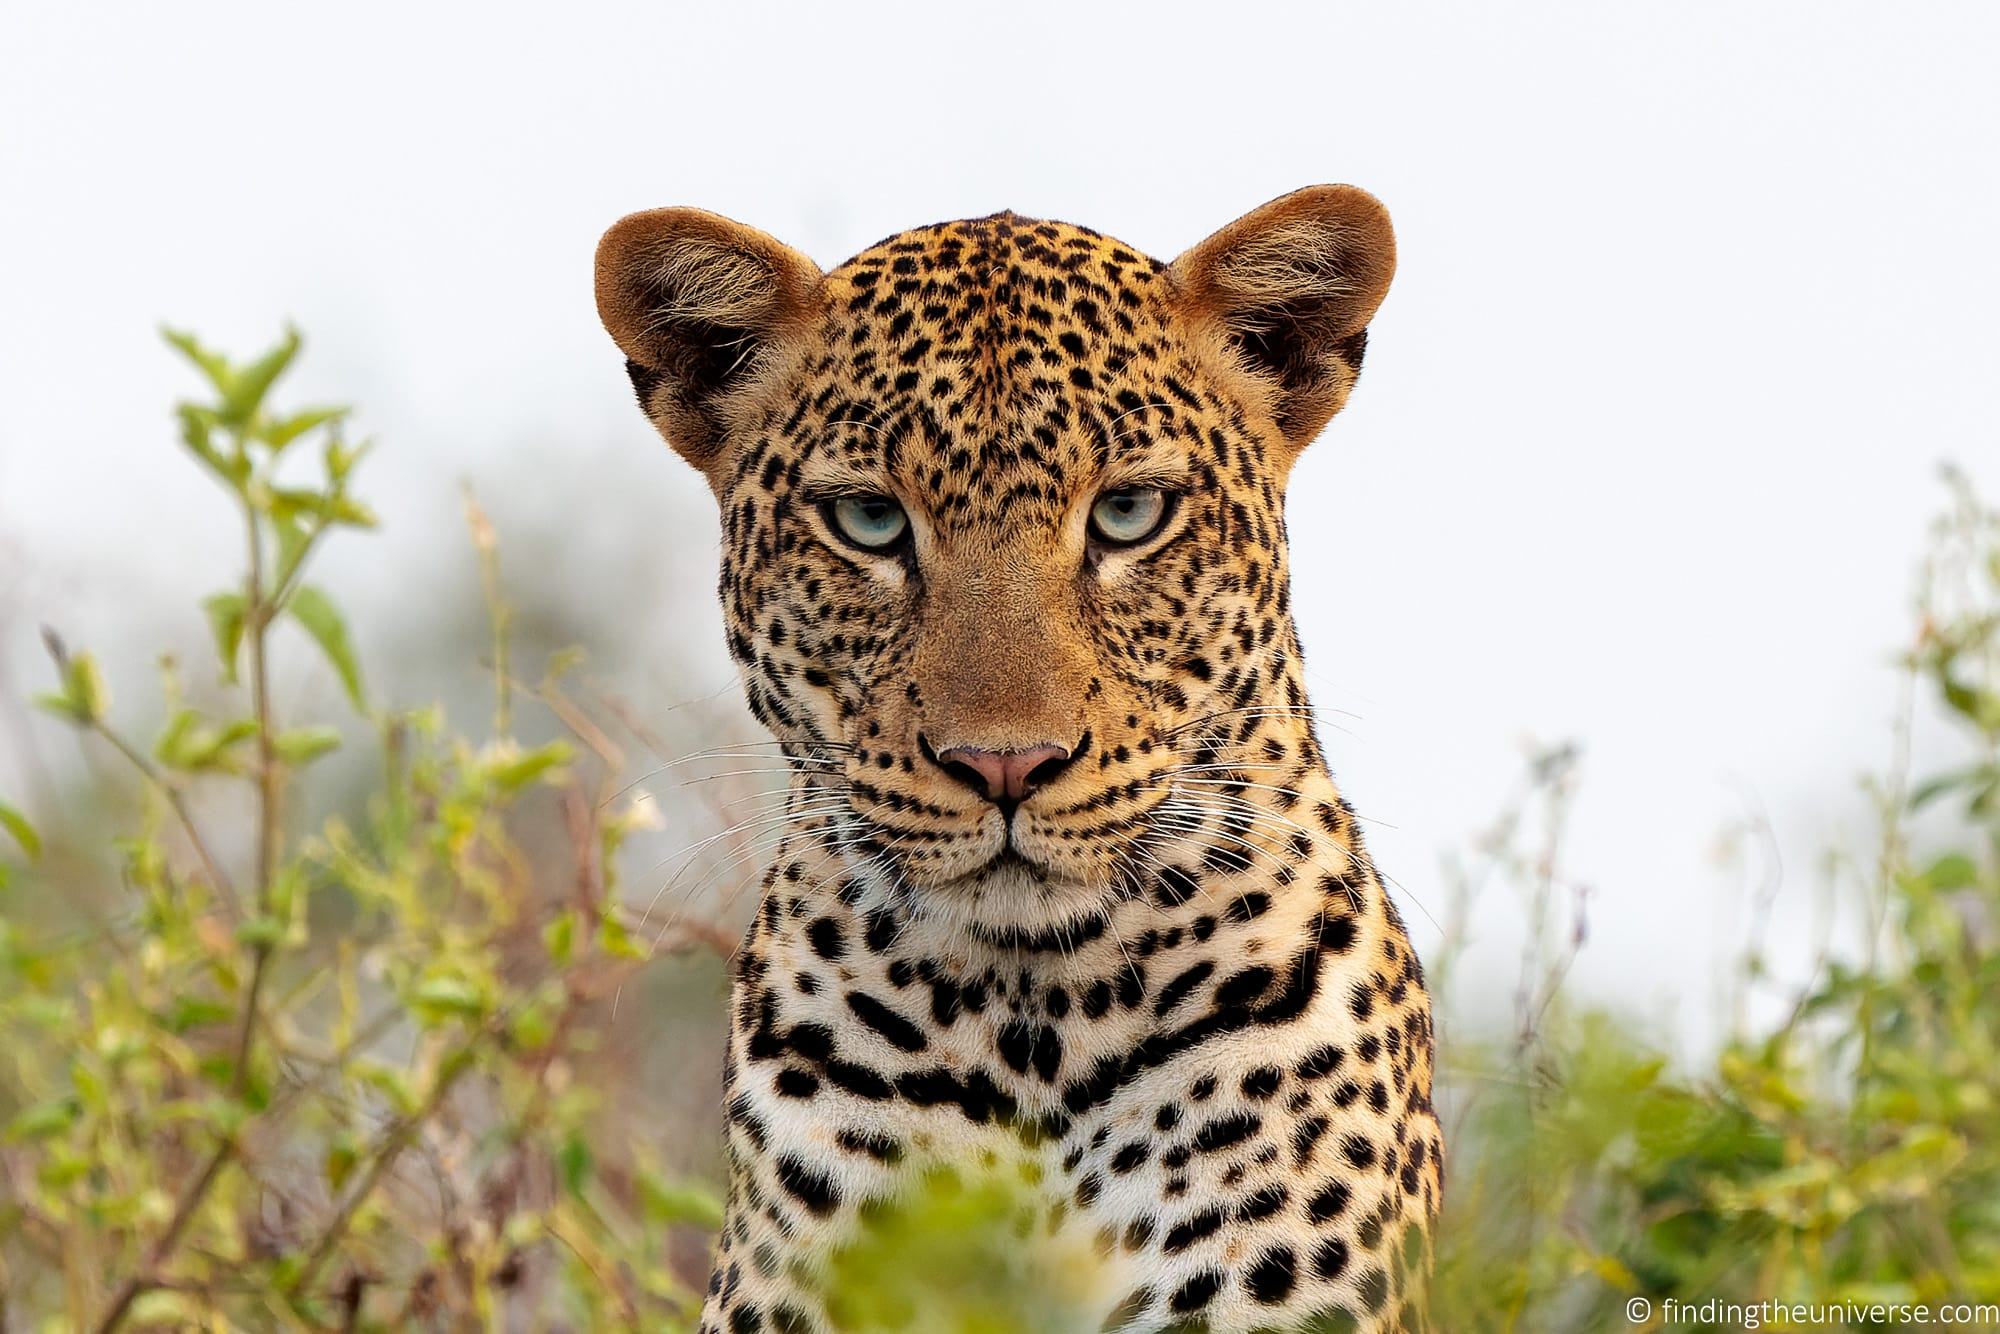 Safari Photography Tips – How to Get Great Photos on Safari